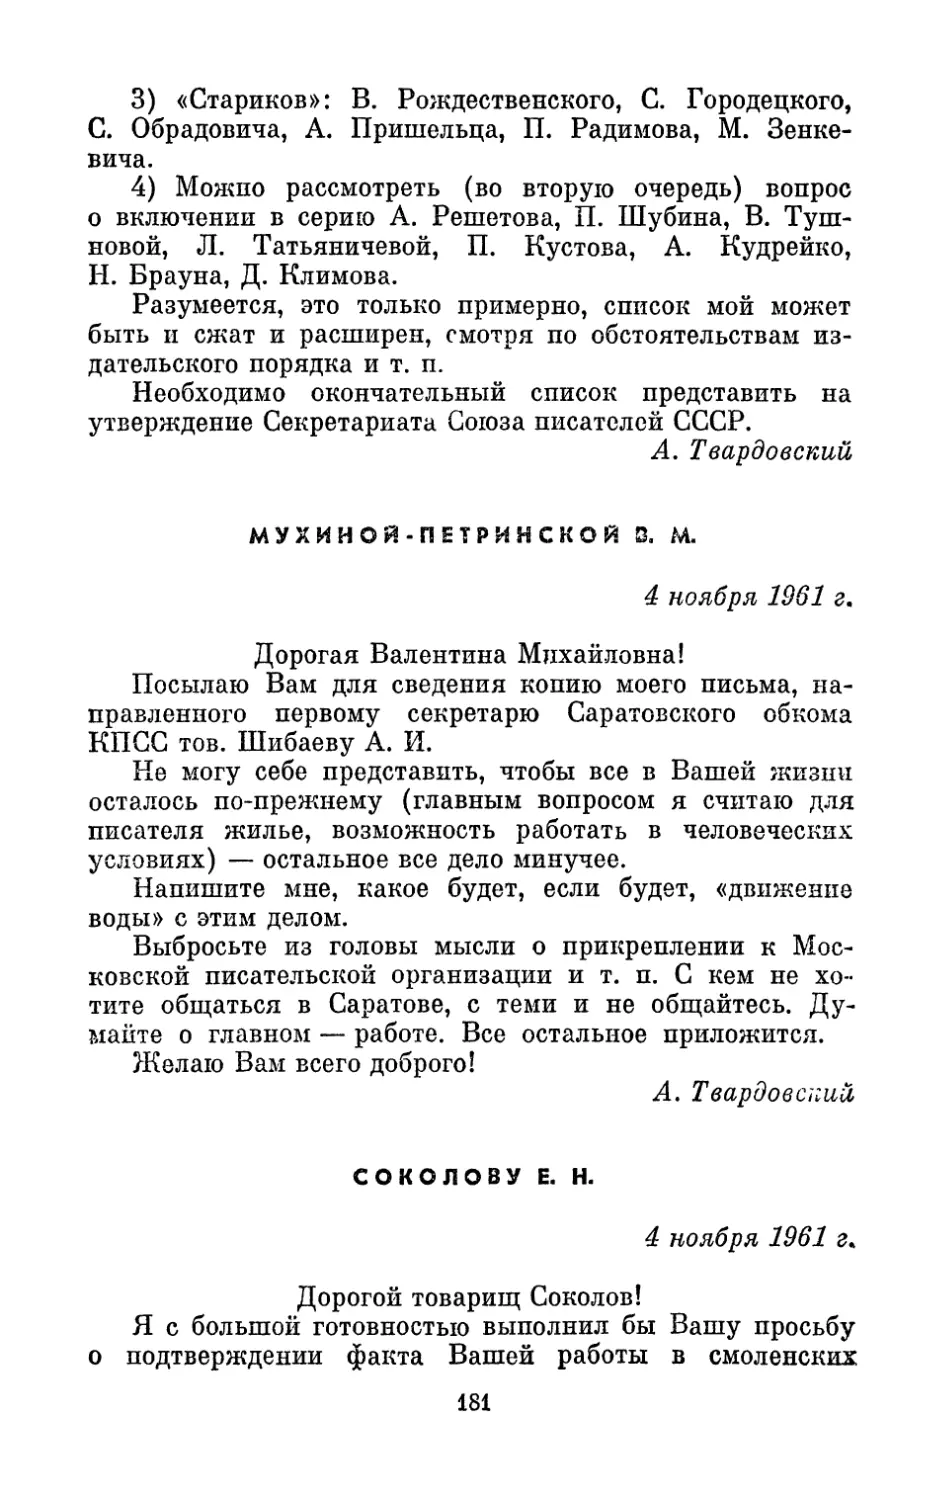 Мухиной-Петринской В. М., 4 ноября 1961 г.
Соколову E. Н., 4 ноября 1961 г.